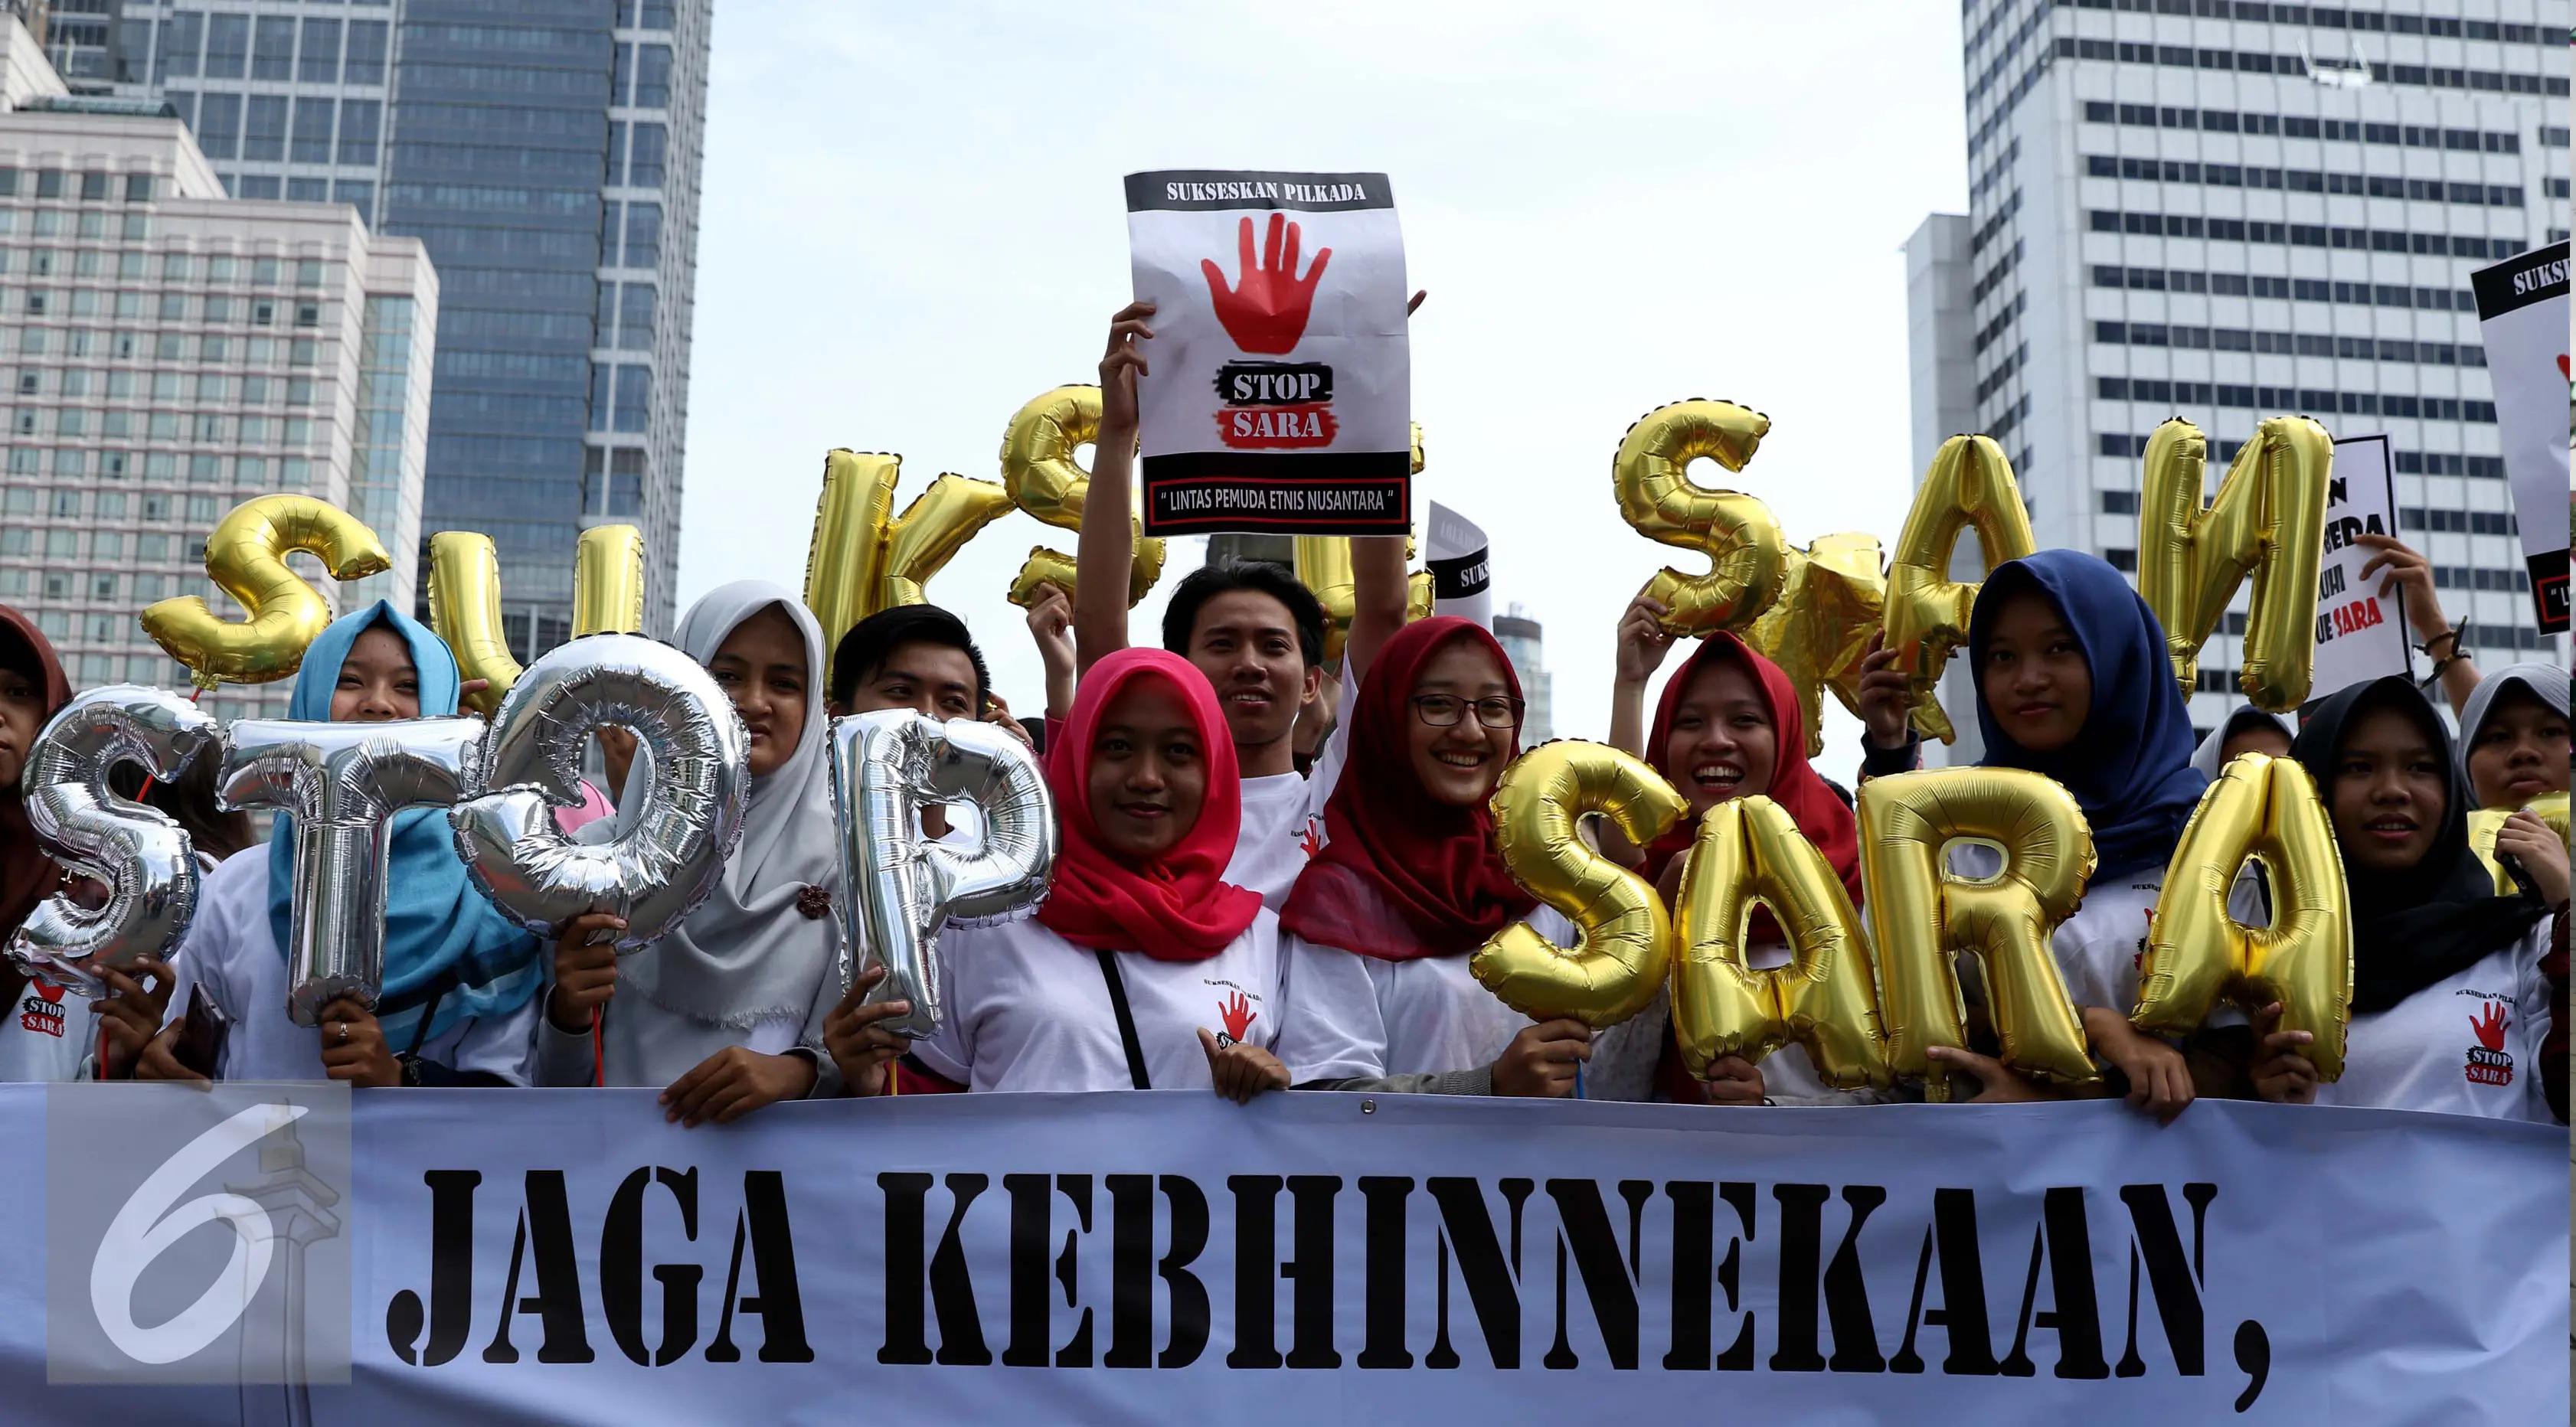 Massa yang tergabung dalam Lintas Pemuda Etnis Nusantara melakukan aksi kampanye di Bundaran HI, Jakarta, Minggu (10/9). Mereka mengajak warga agar tidak menggunakan isu SARA untuk menyukseskan Pilkada. (Liputan6.com/Gempur M Surya)